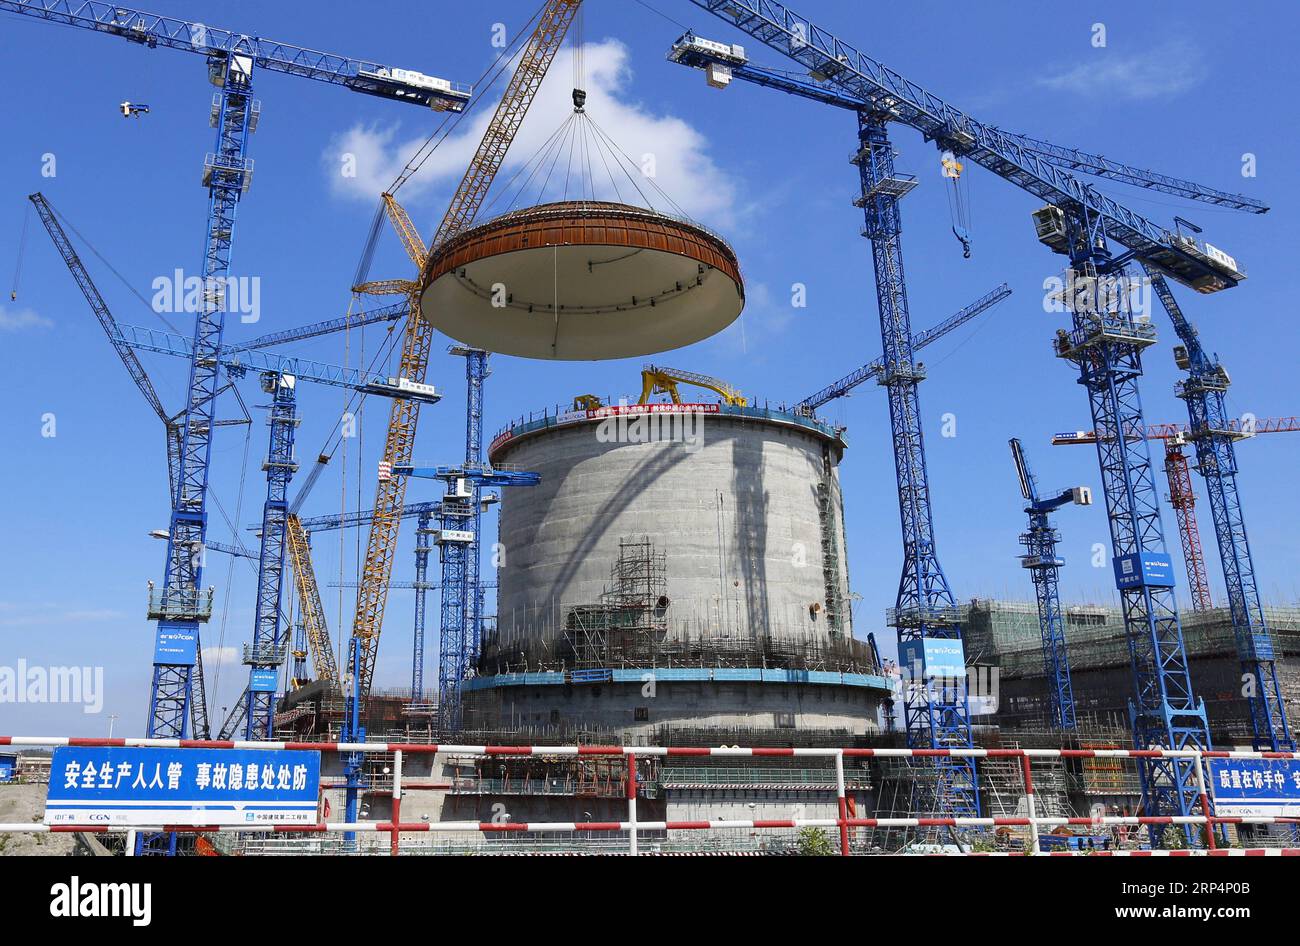 (181115) -- PEKING, 15. November 2018 -- Foto vom 23. Mai 2018 zeigt den Installationsort einer halbkugelförmigen Kuppel an der Einheit Nr. 3 des Kernkraftwerks Fangchenggang in der südchinesischen autonomen Region Guangxi Zhuang. Nach Angaben des National Bureau of Statistics stieg Chinas Stromerzeugung in den ersten zehn Monaten des Jahres 2018 um 7,2 Prozent gegenüber dem Vorjahr. Allein im Oktober erzeugte China 533 Milliarden Kilowattstunden (kWh) Strom, ein Anstieg von 4,8 Prozent im Vergleich zum Vorjahr, schneller als das Wachstum von 4,6 Prozent im September. Die durchschnittliche tägliche Stromerzeugung erreichte 17,2 Milliarden kWh und ging von 18,3 Mrd. kWh zurück Stockfoto